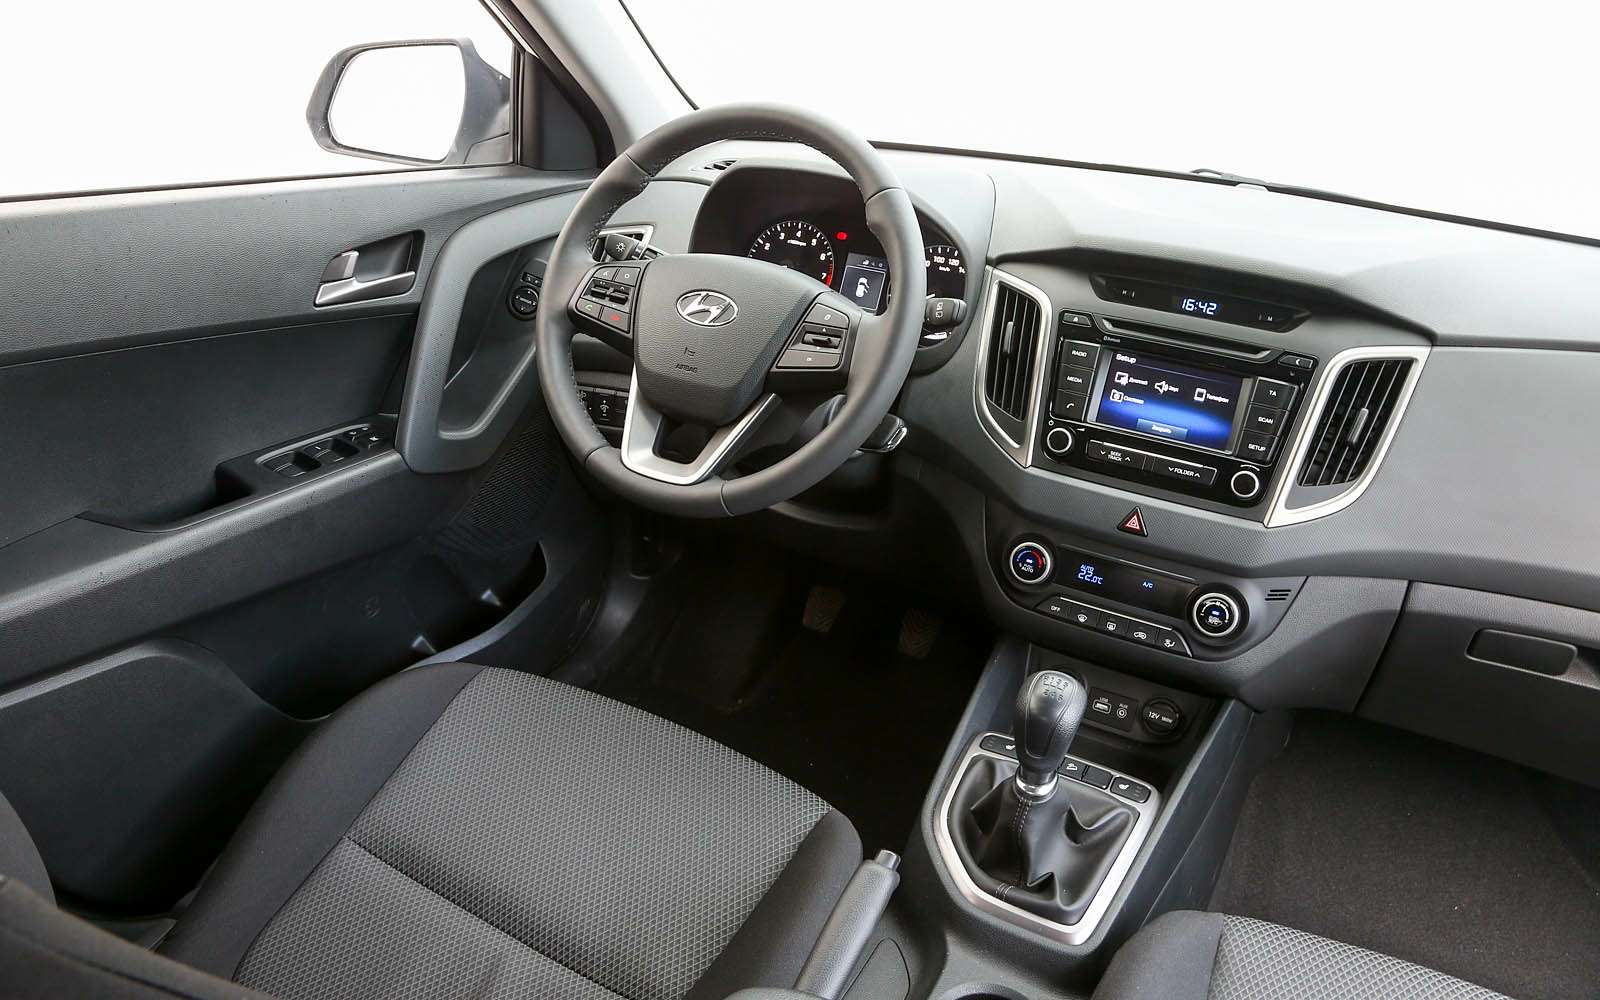 Lada XRAY, Hyundai Creta и Renault Kaptur по одной цене: что выбрать? — фото 778480